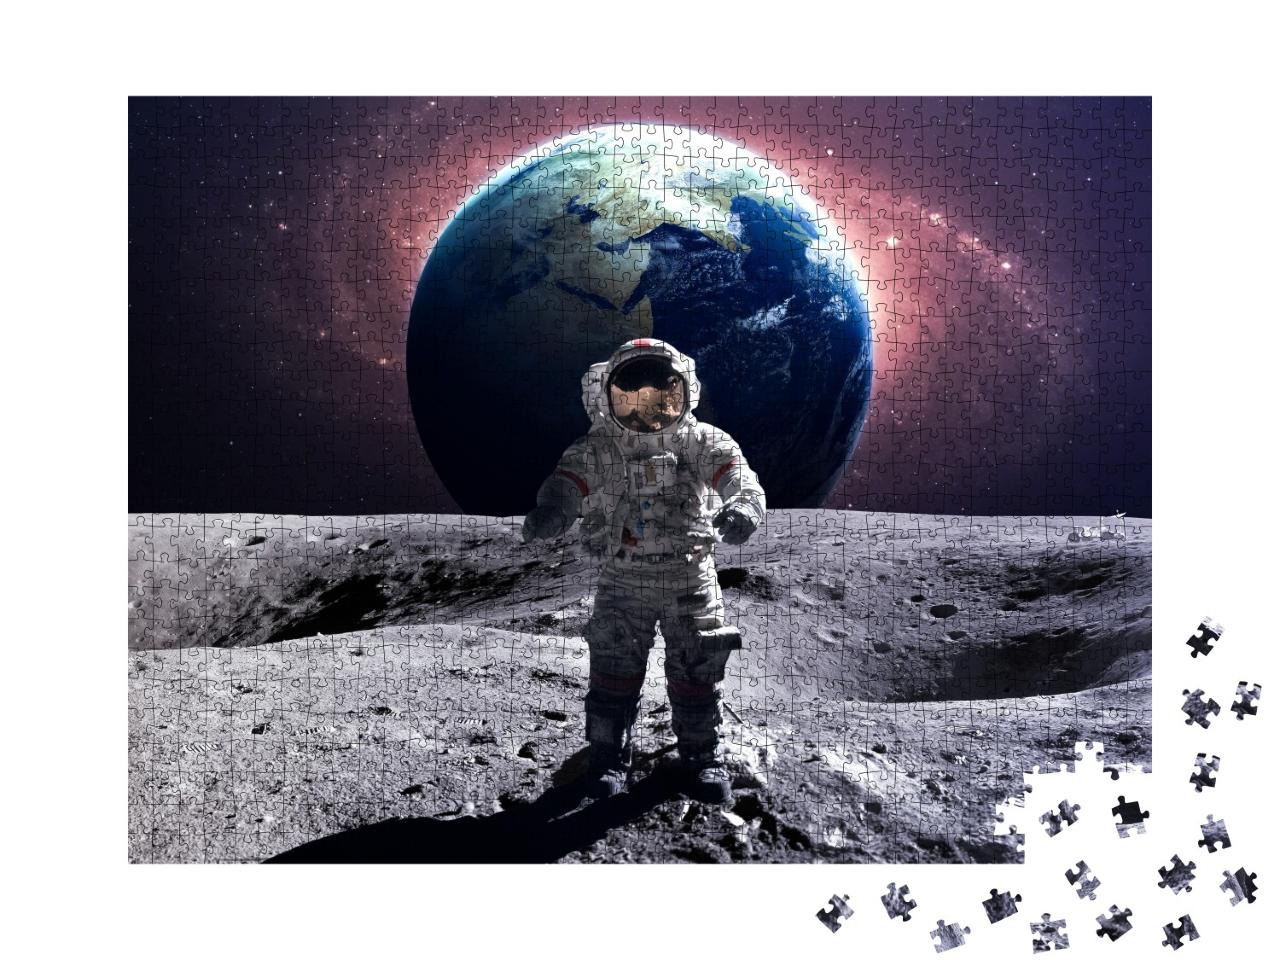 Puzzle 1000 Teile „Mutiger Astronaut bei einem Weltraumspaziergang auf dem Mond“